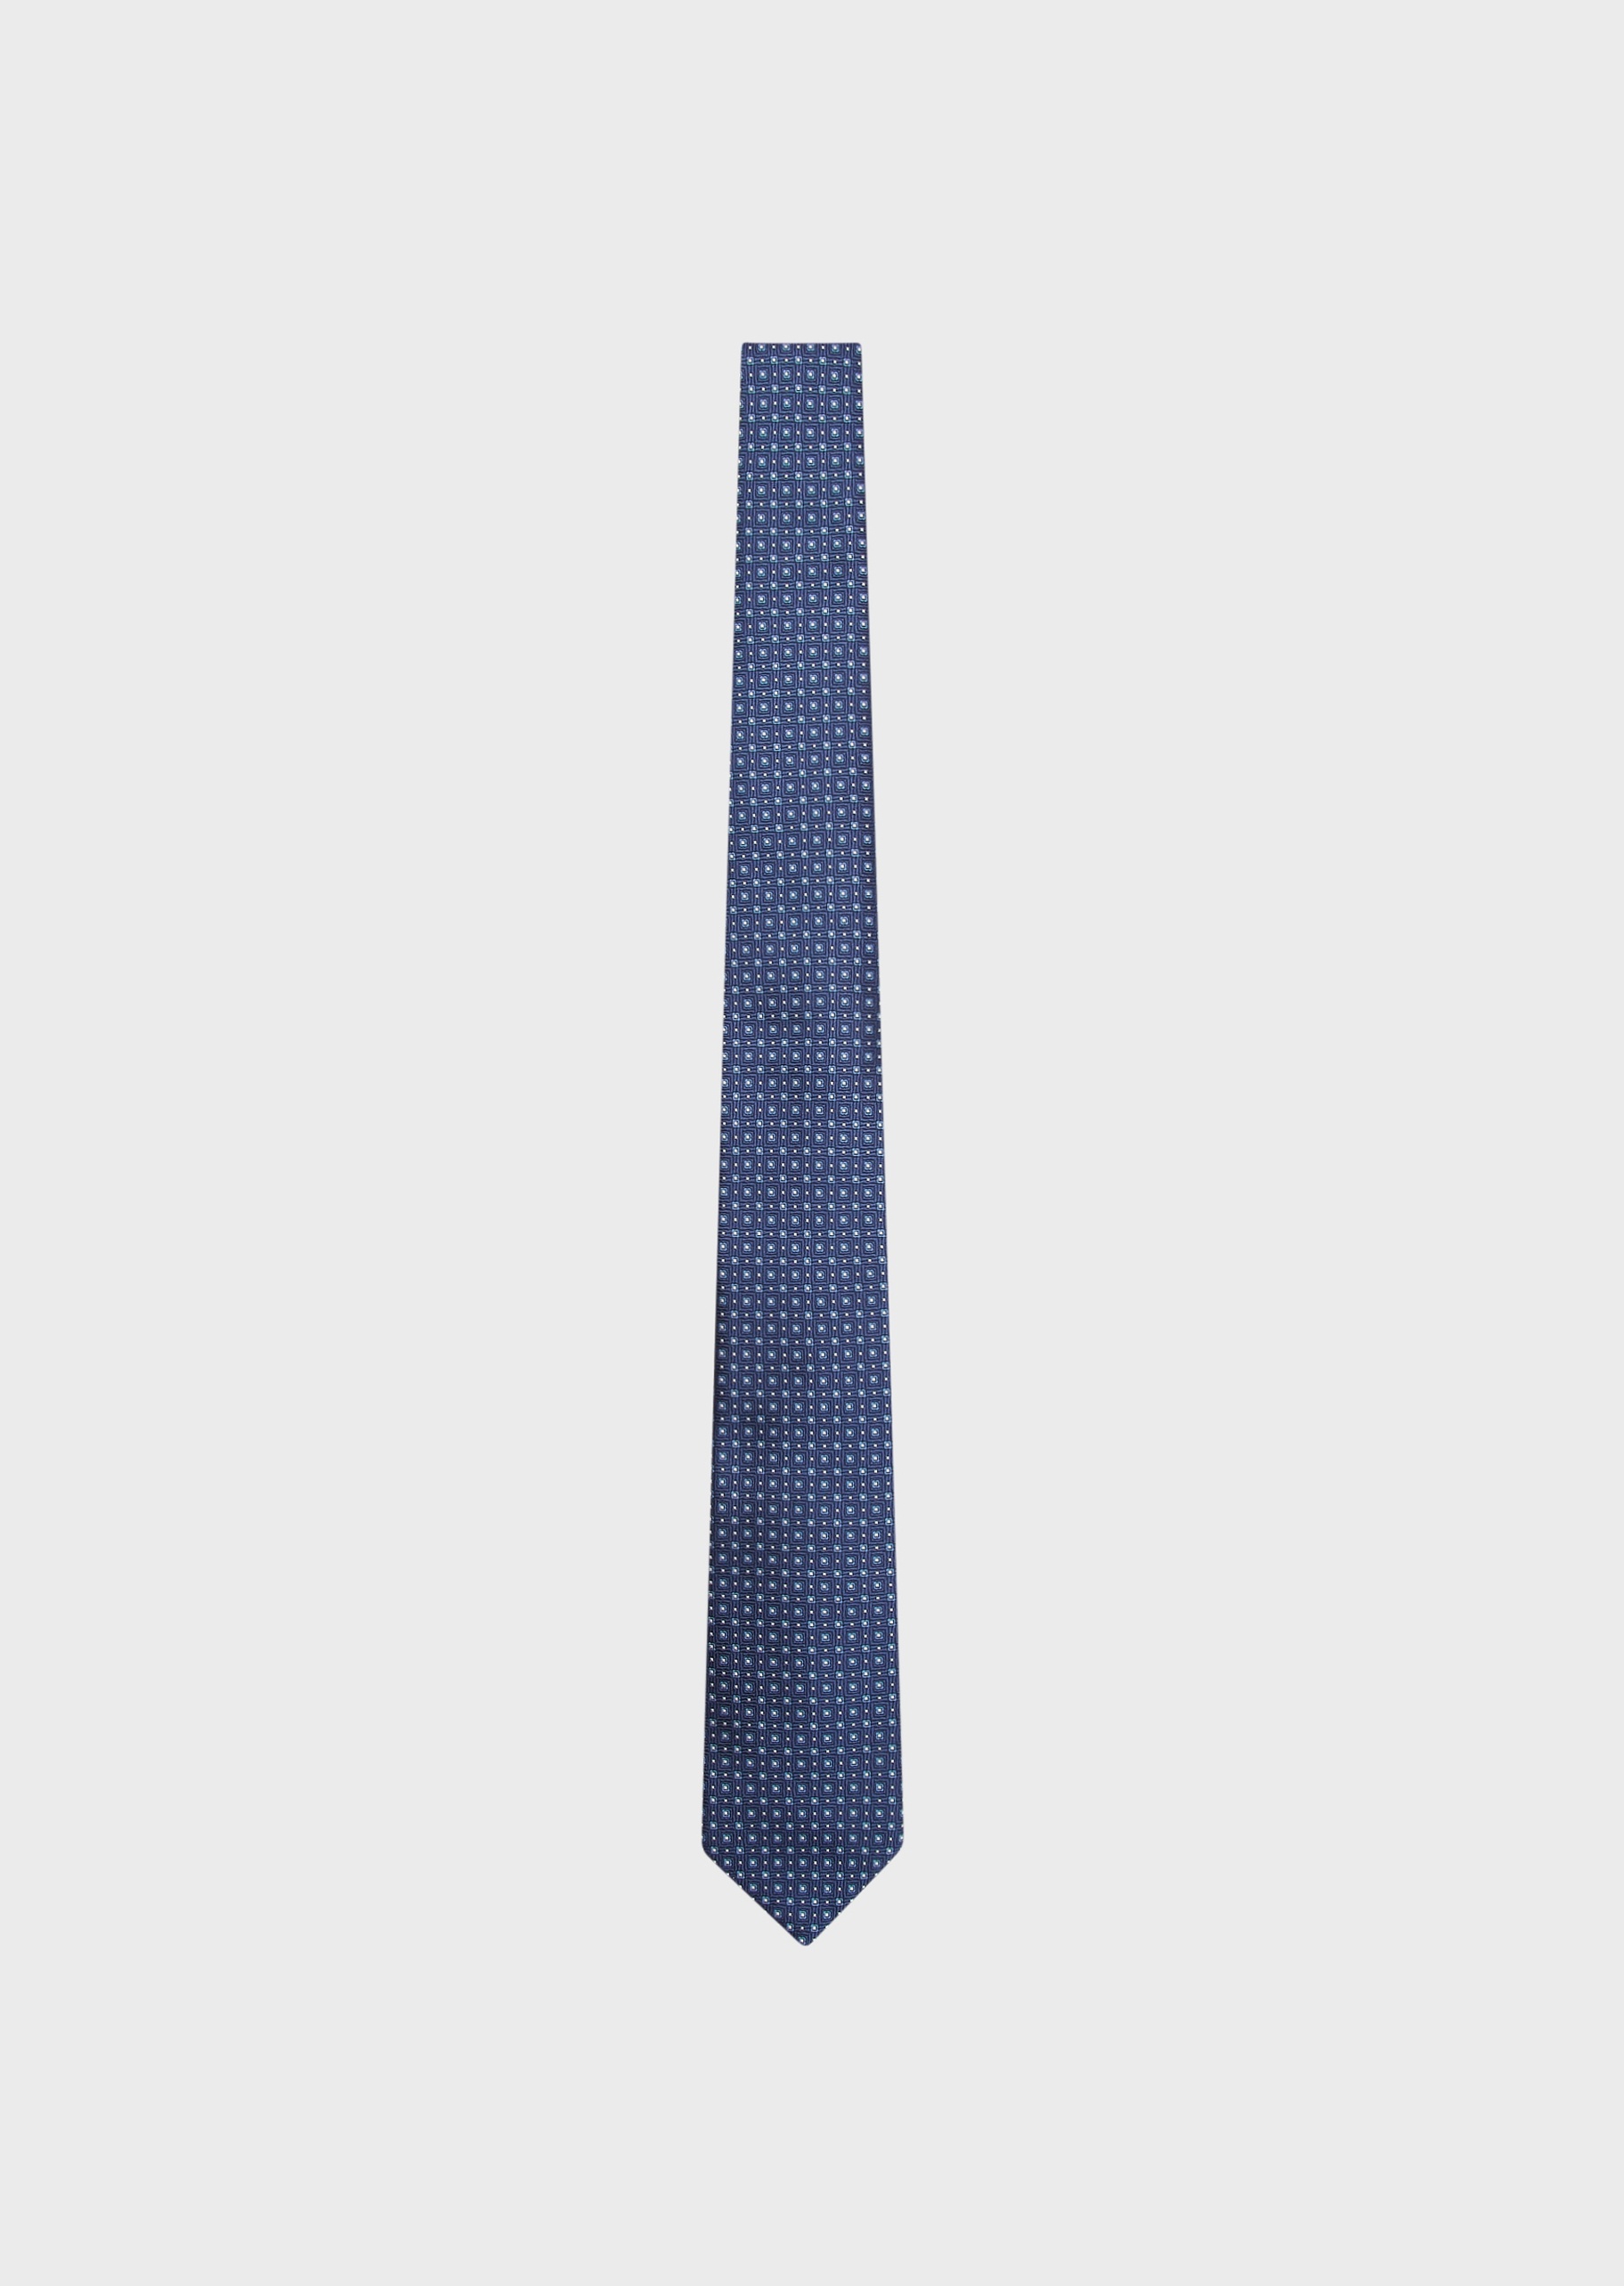 Giorgio Armani 通体方形提花真丝领带